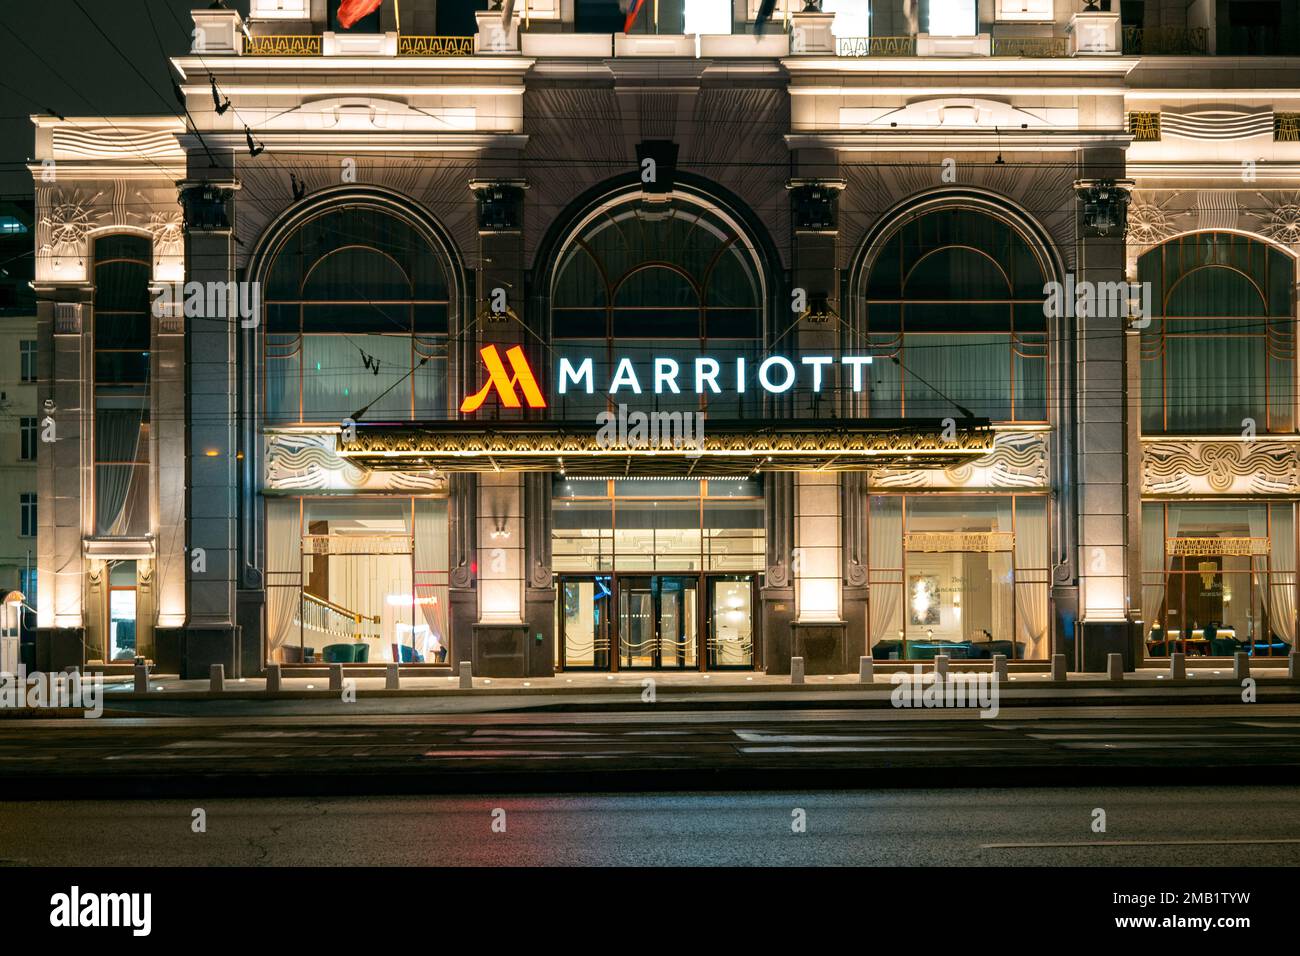 MOSKAU - MÄRZ 14: Marriott Hotel in Moskau am 14. März. 2022 in Russland. Marriott International ist ein amerikanisches Unternehmen, das betreibt, Franchise-Partner ist und Stockfoto